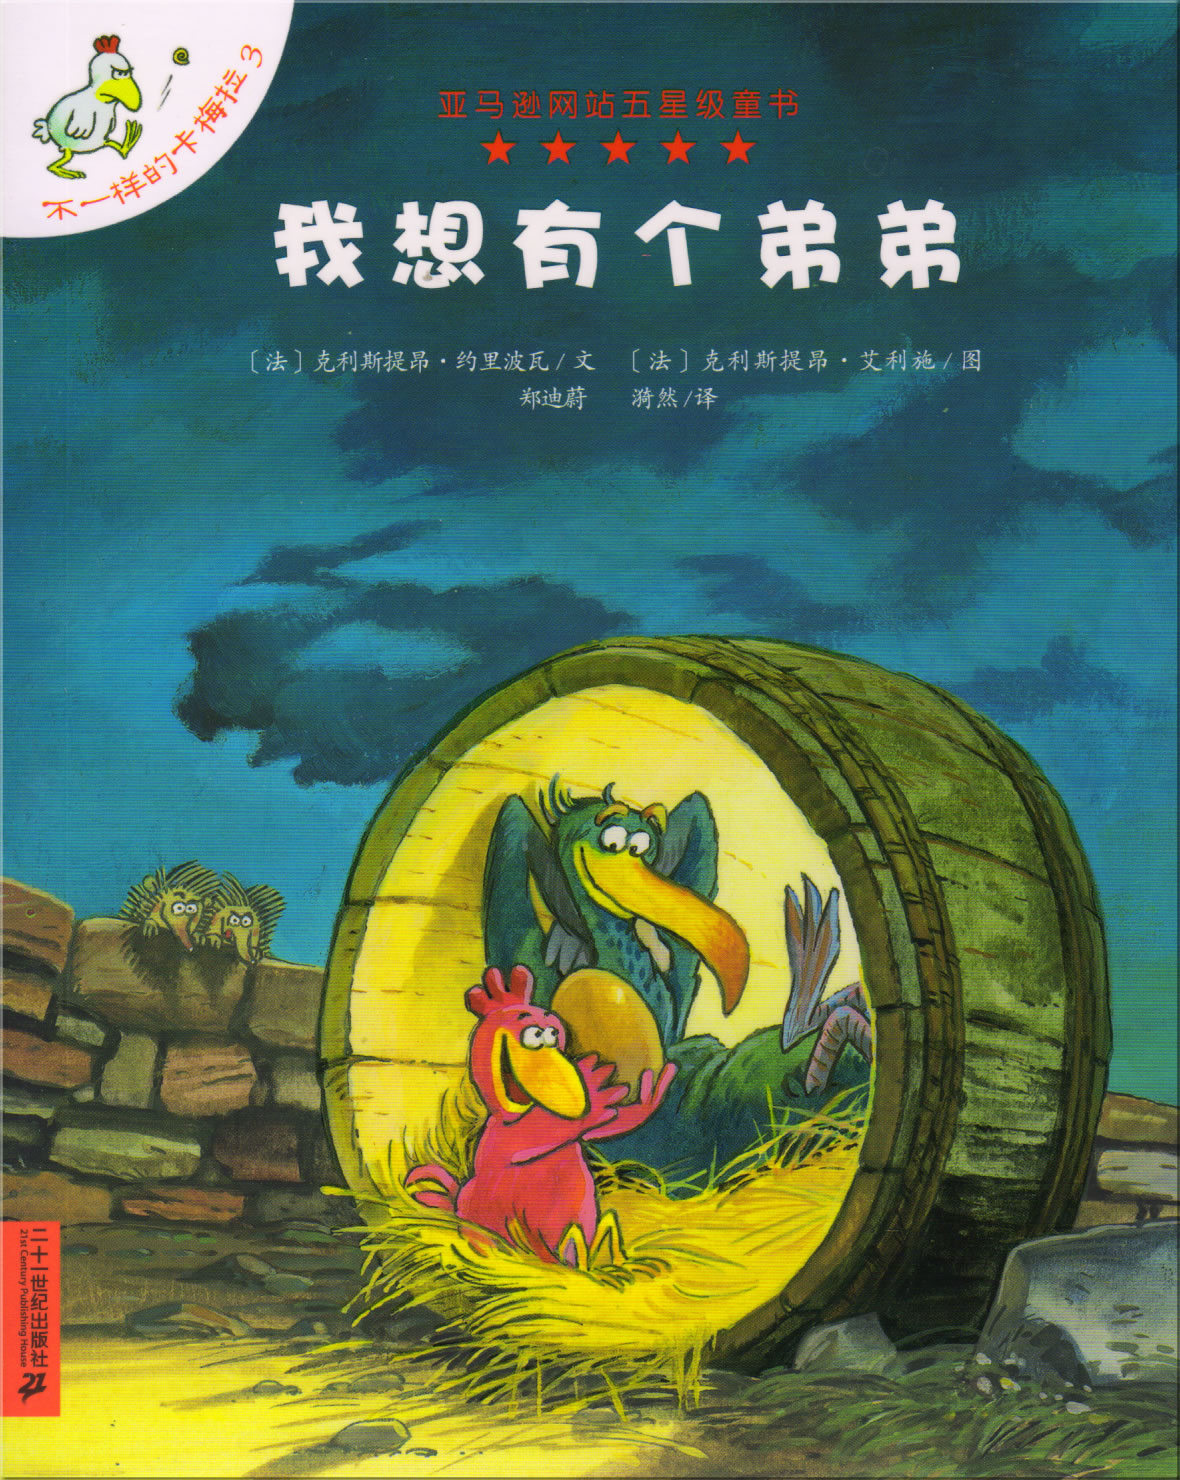 Les P'tites Poules: Le jour où mon frère viendra (Chinese edition)<br>ISBN: 978-7-5391-3517-5, 9787539135175